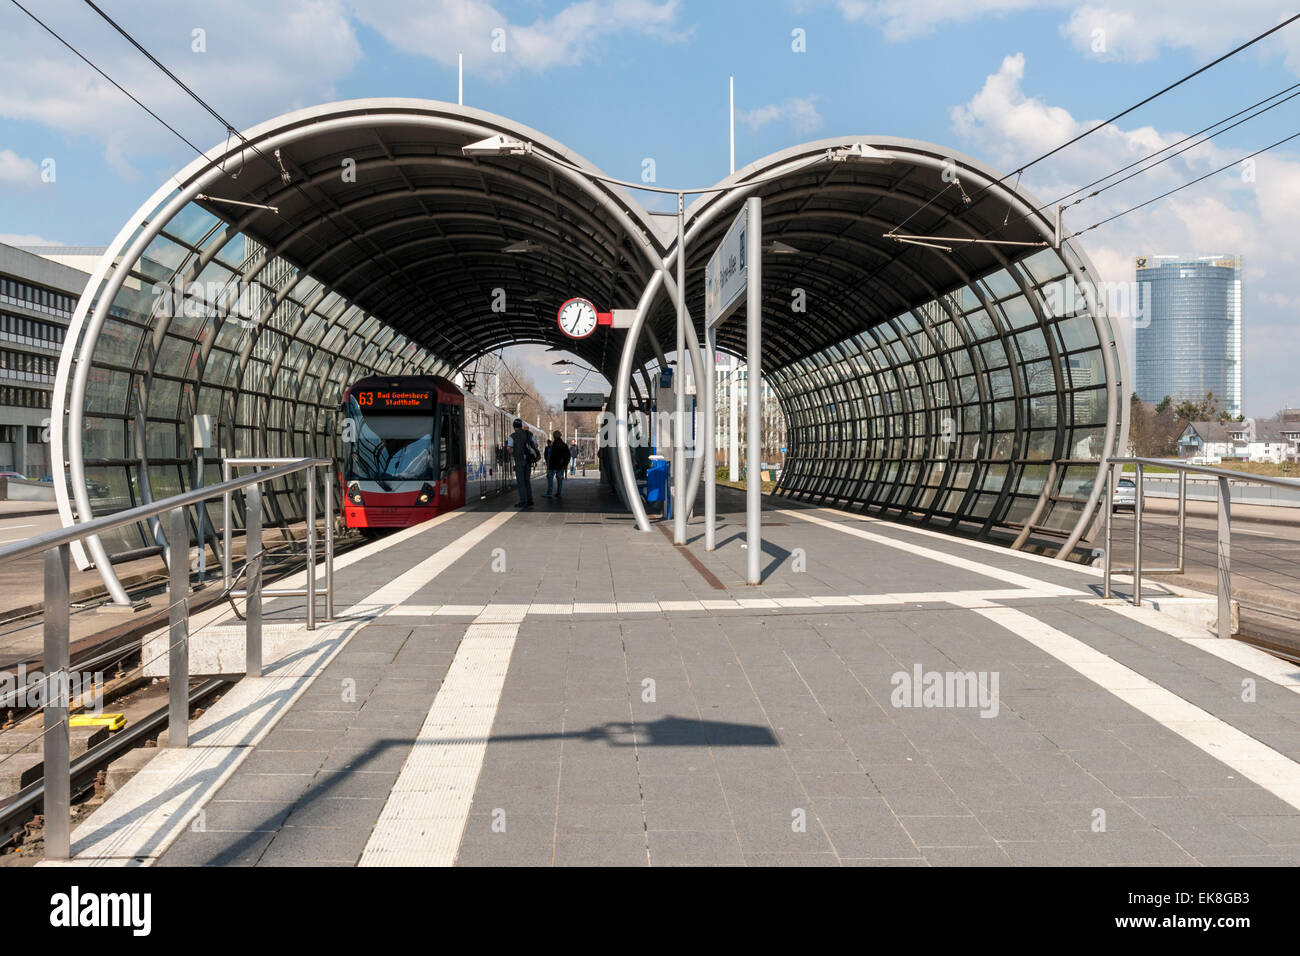 Moderne Station am südlichen Abschnitt der Stadtbahn oder Light Railway System in Bonn, Deutschland. Stockfoto